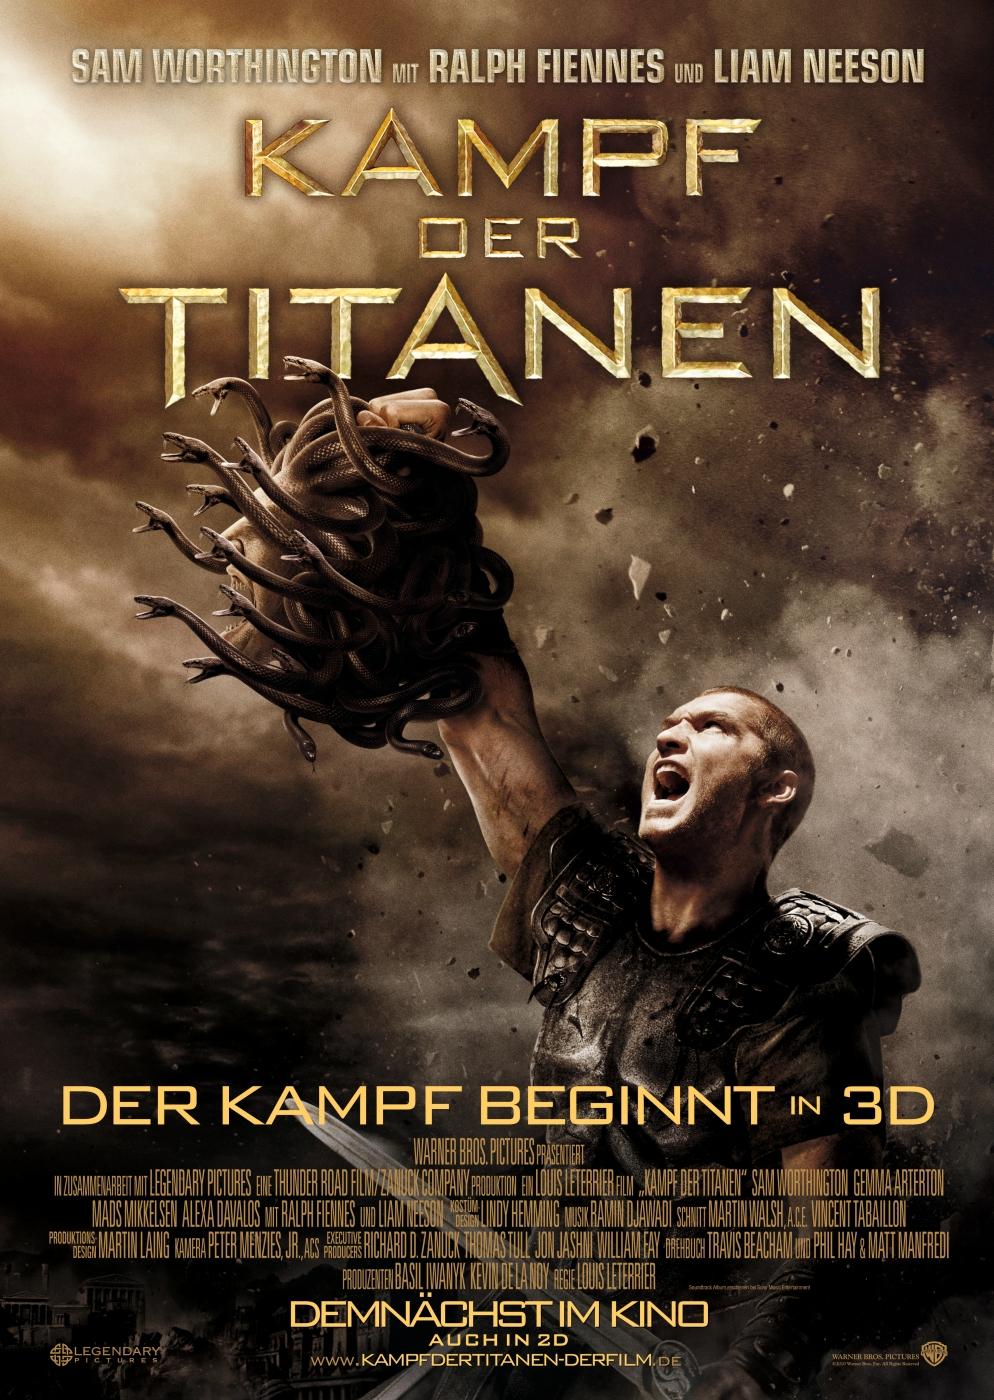 Постер фильма Битва Титанов | Clash of the Titans